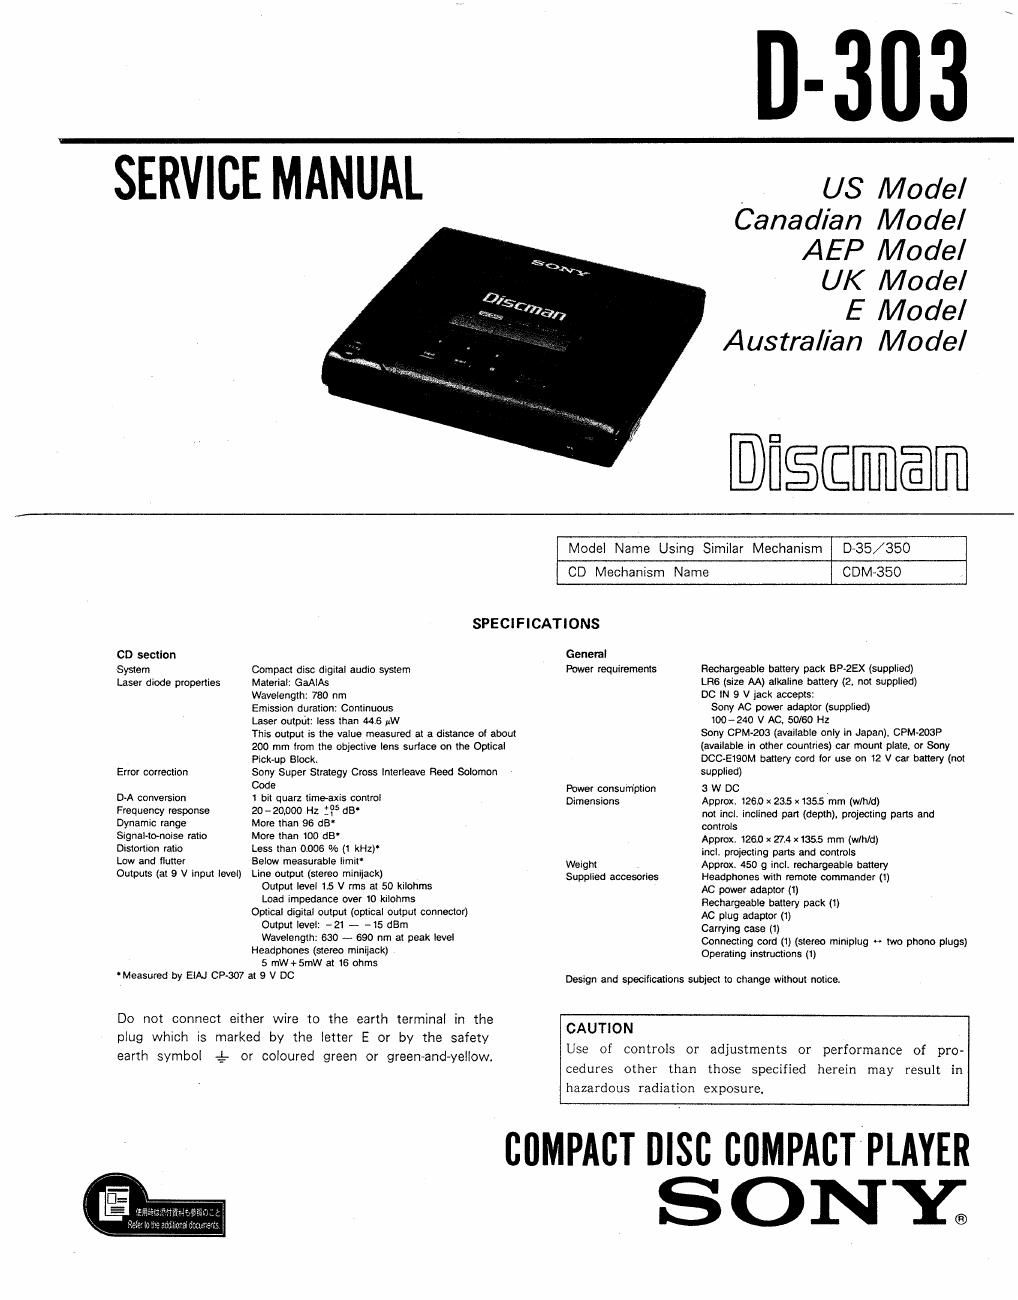 sony d 303 service manual